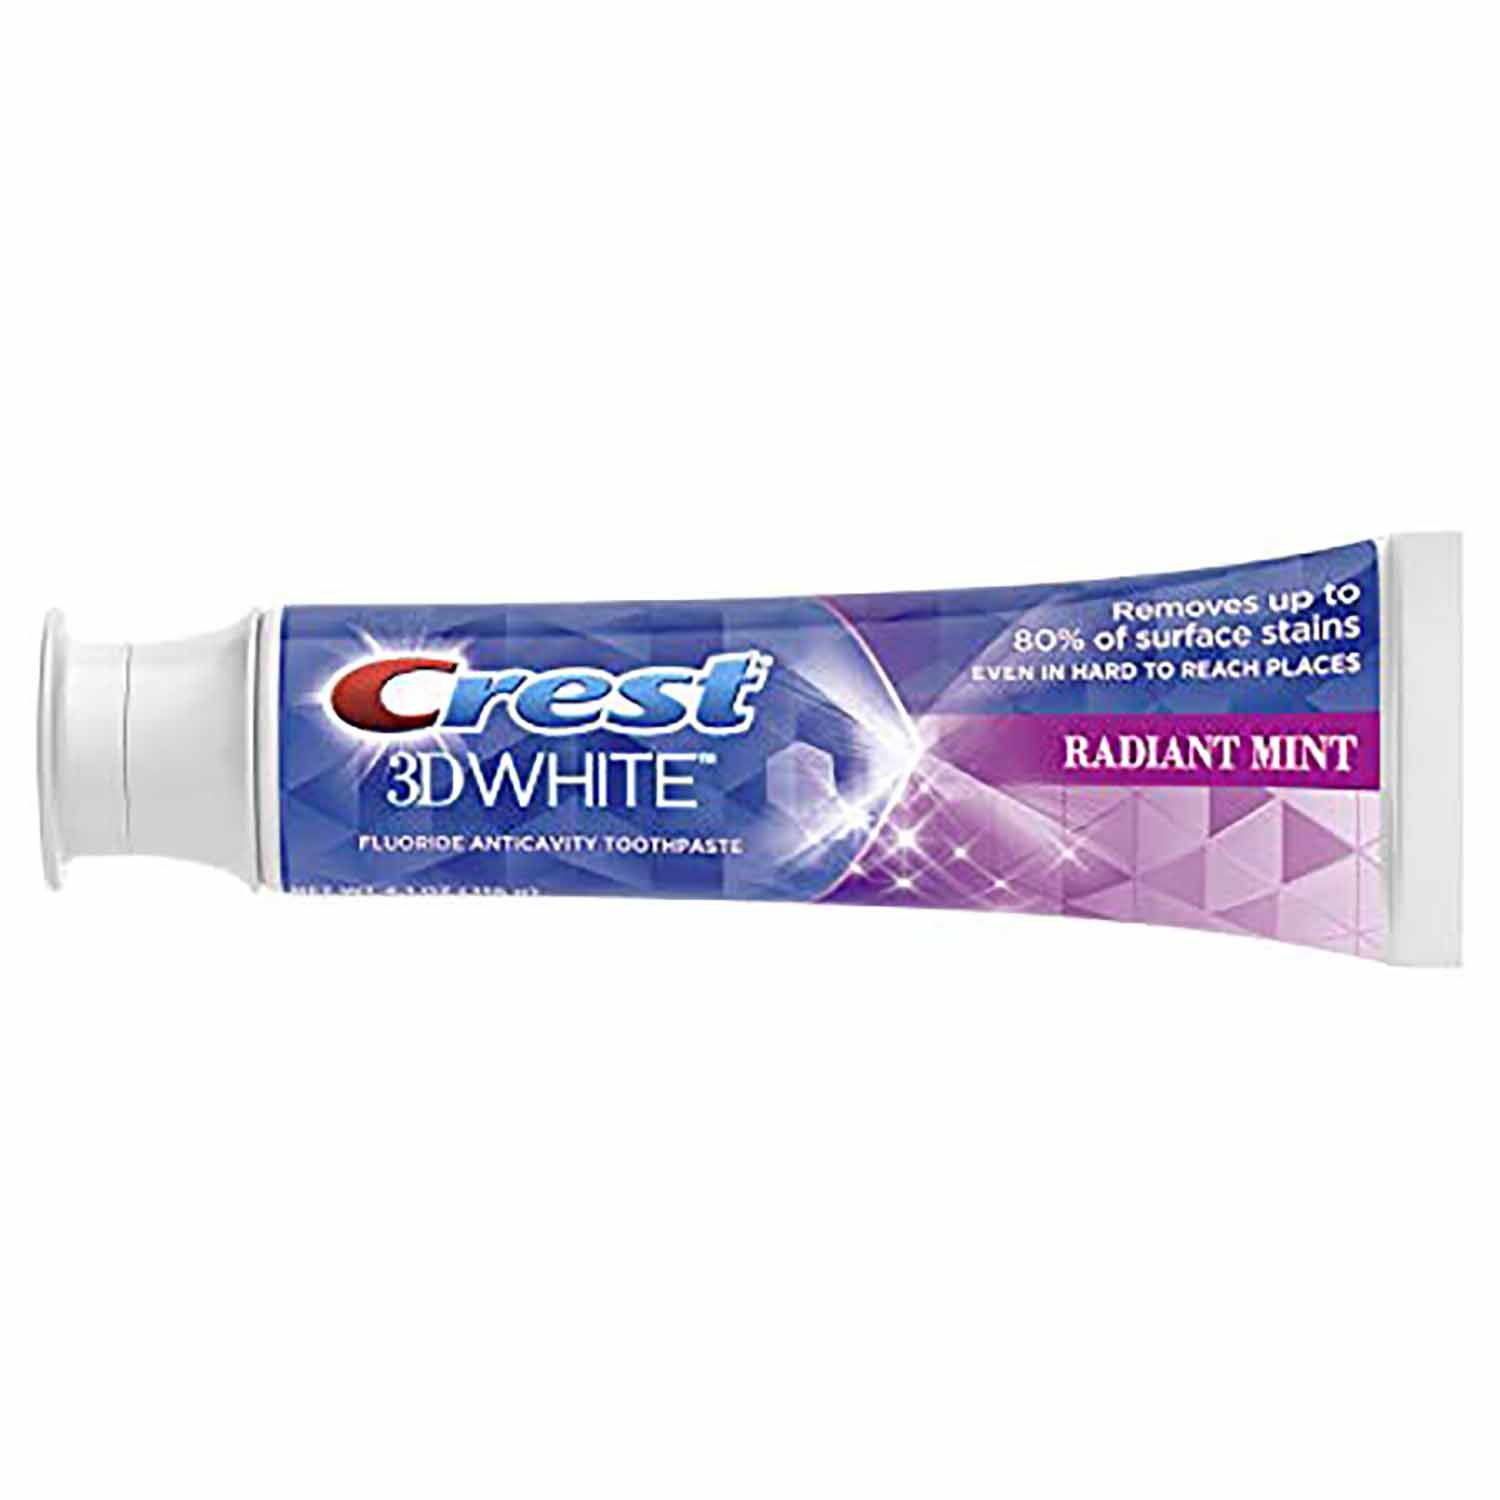 whitening toothpaste crest